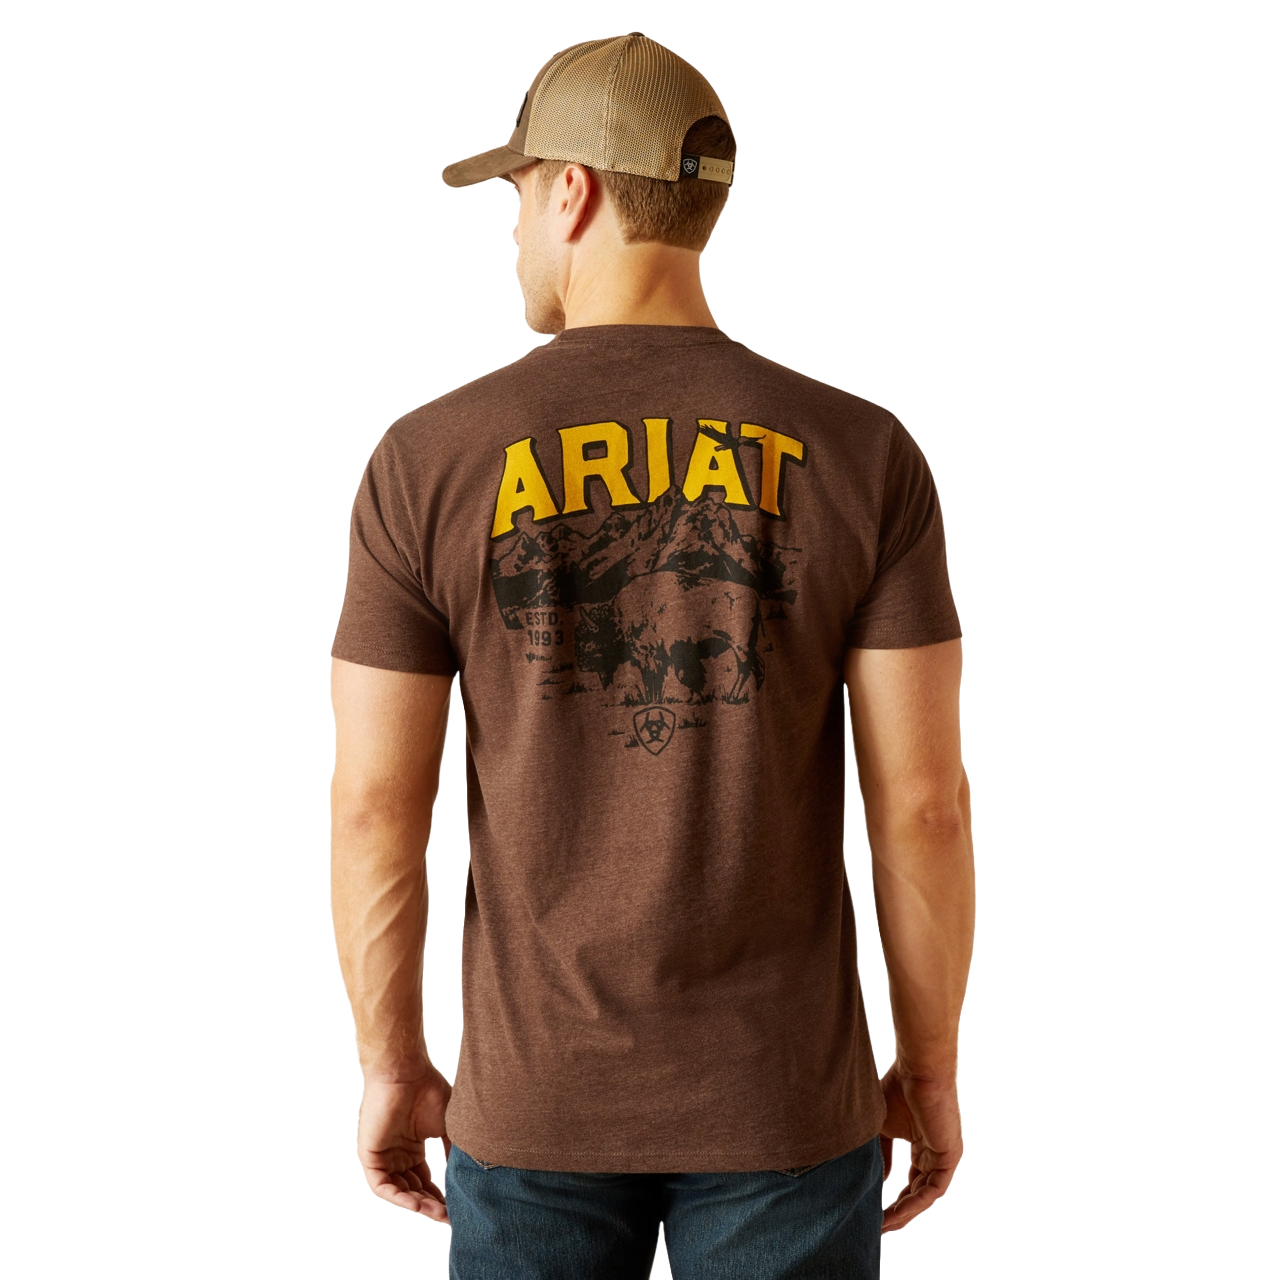 Ariat Men's Western Bison Graphic Brown T-Shirt 10051750